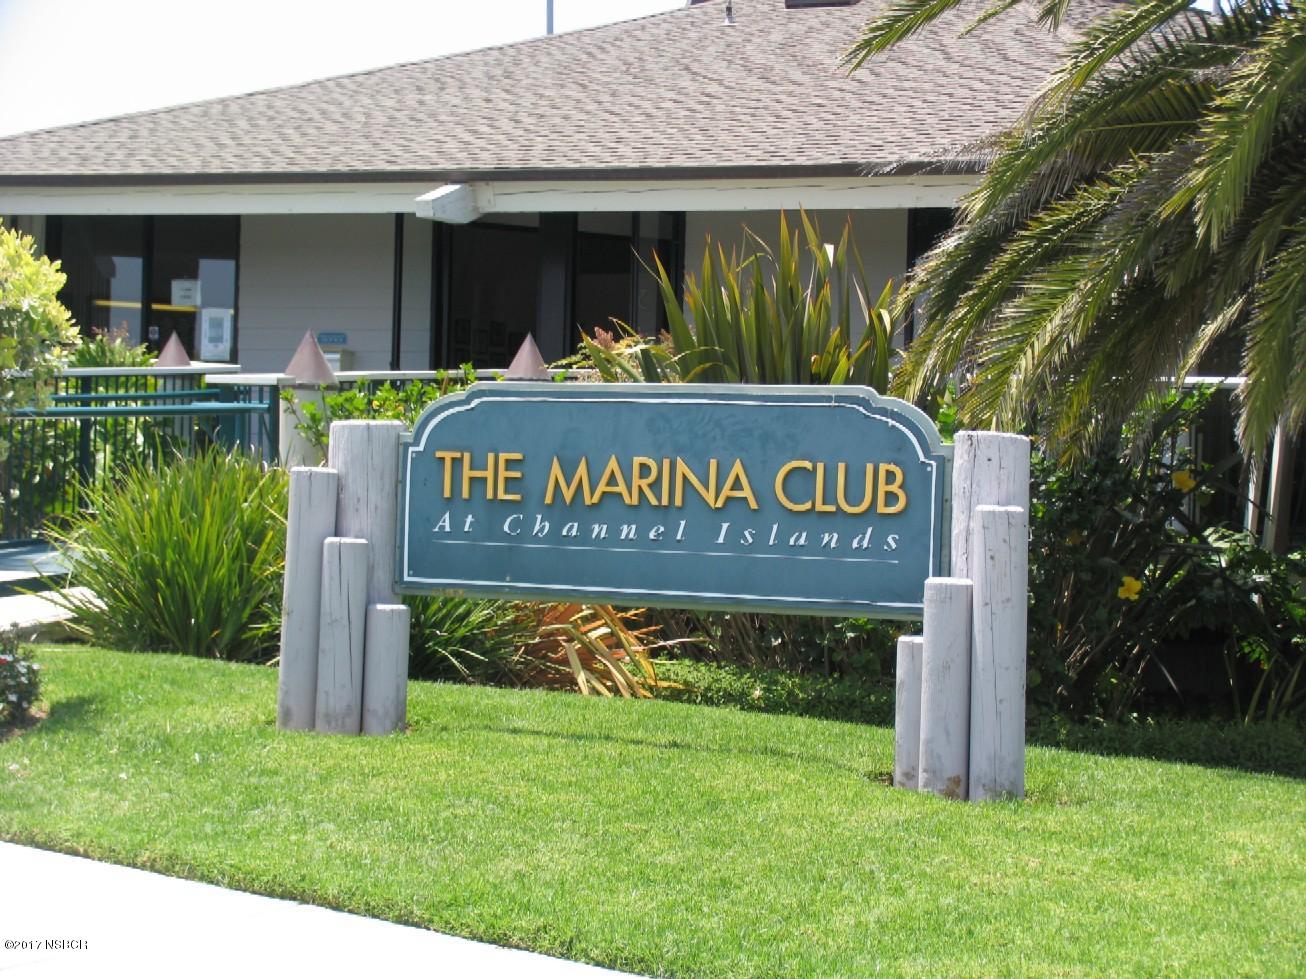 The Marina Club